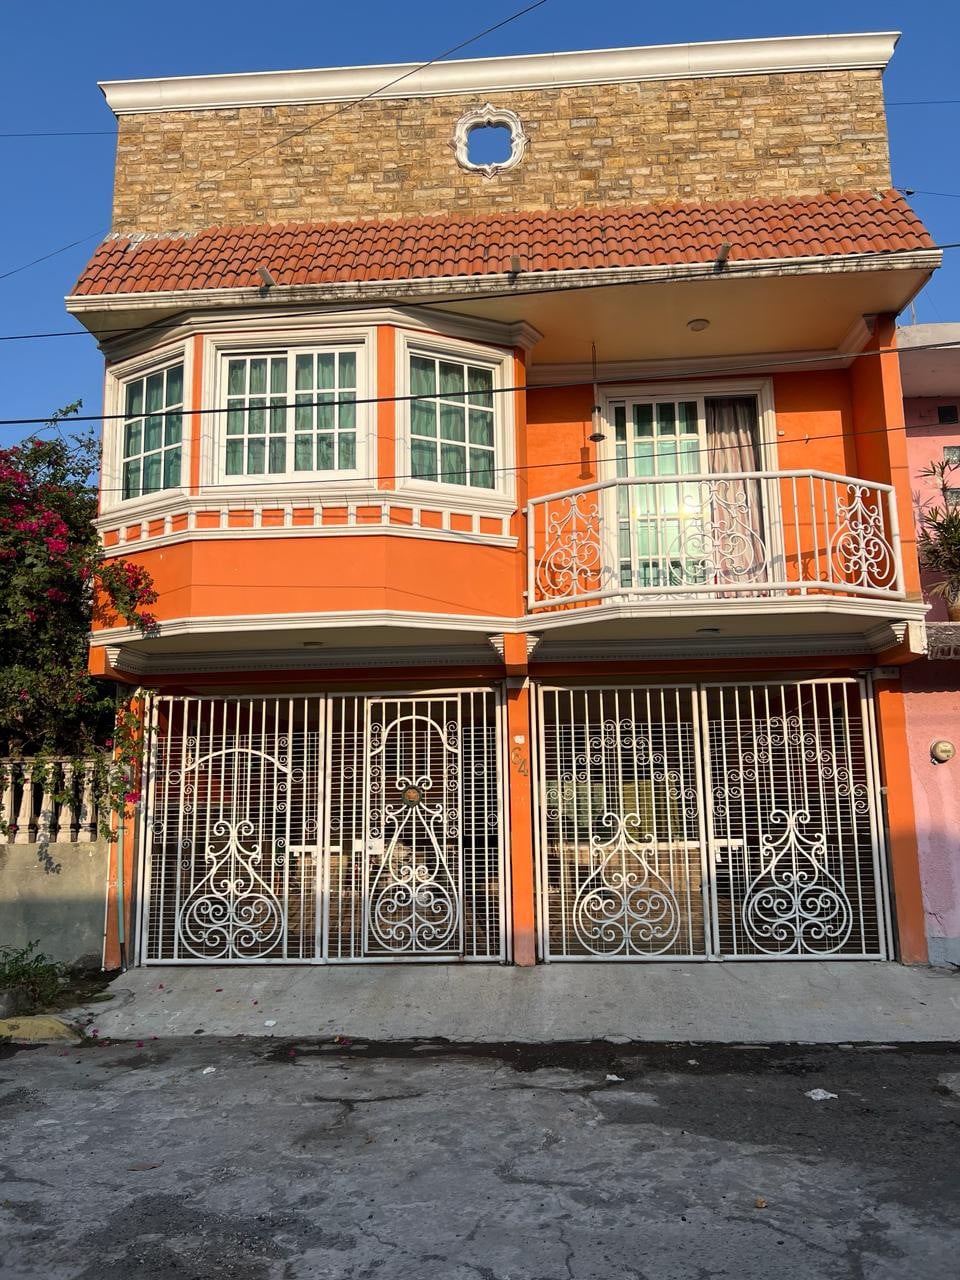 La casa naranja